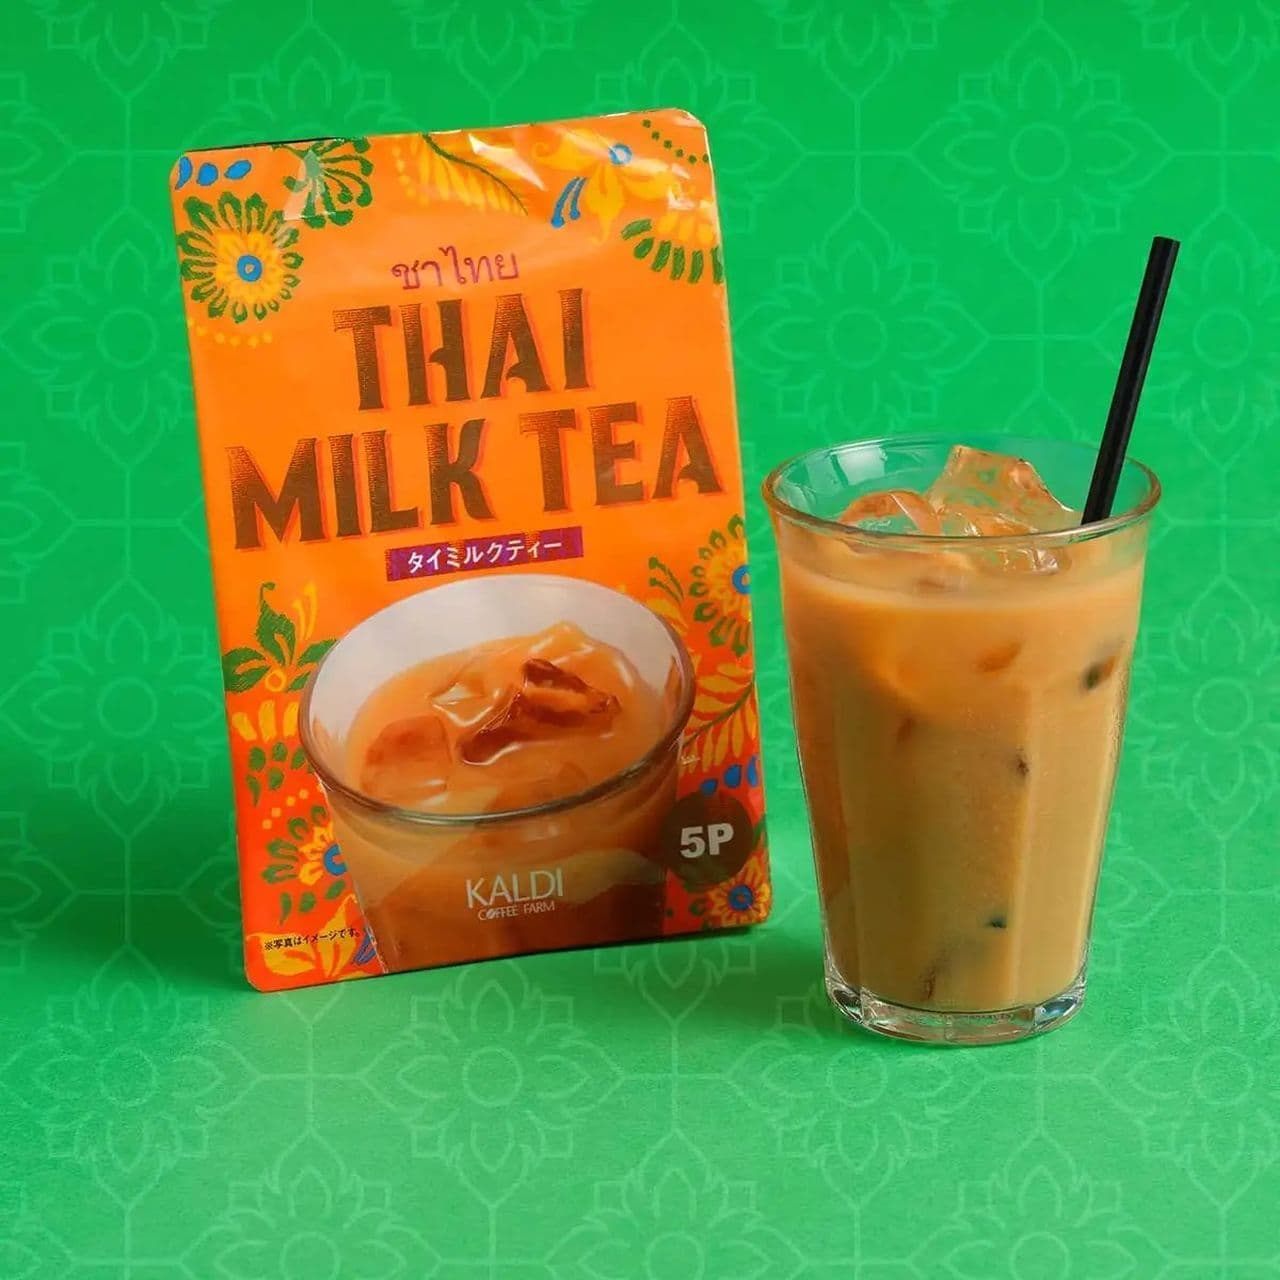 KALDIo Original Thai Milk Tea